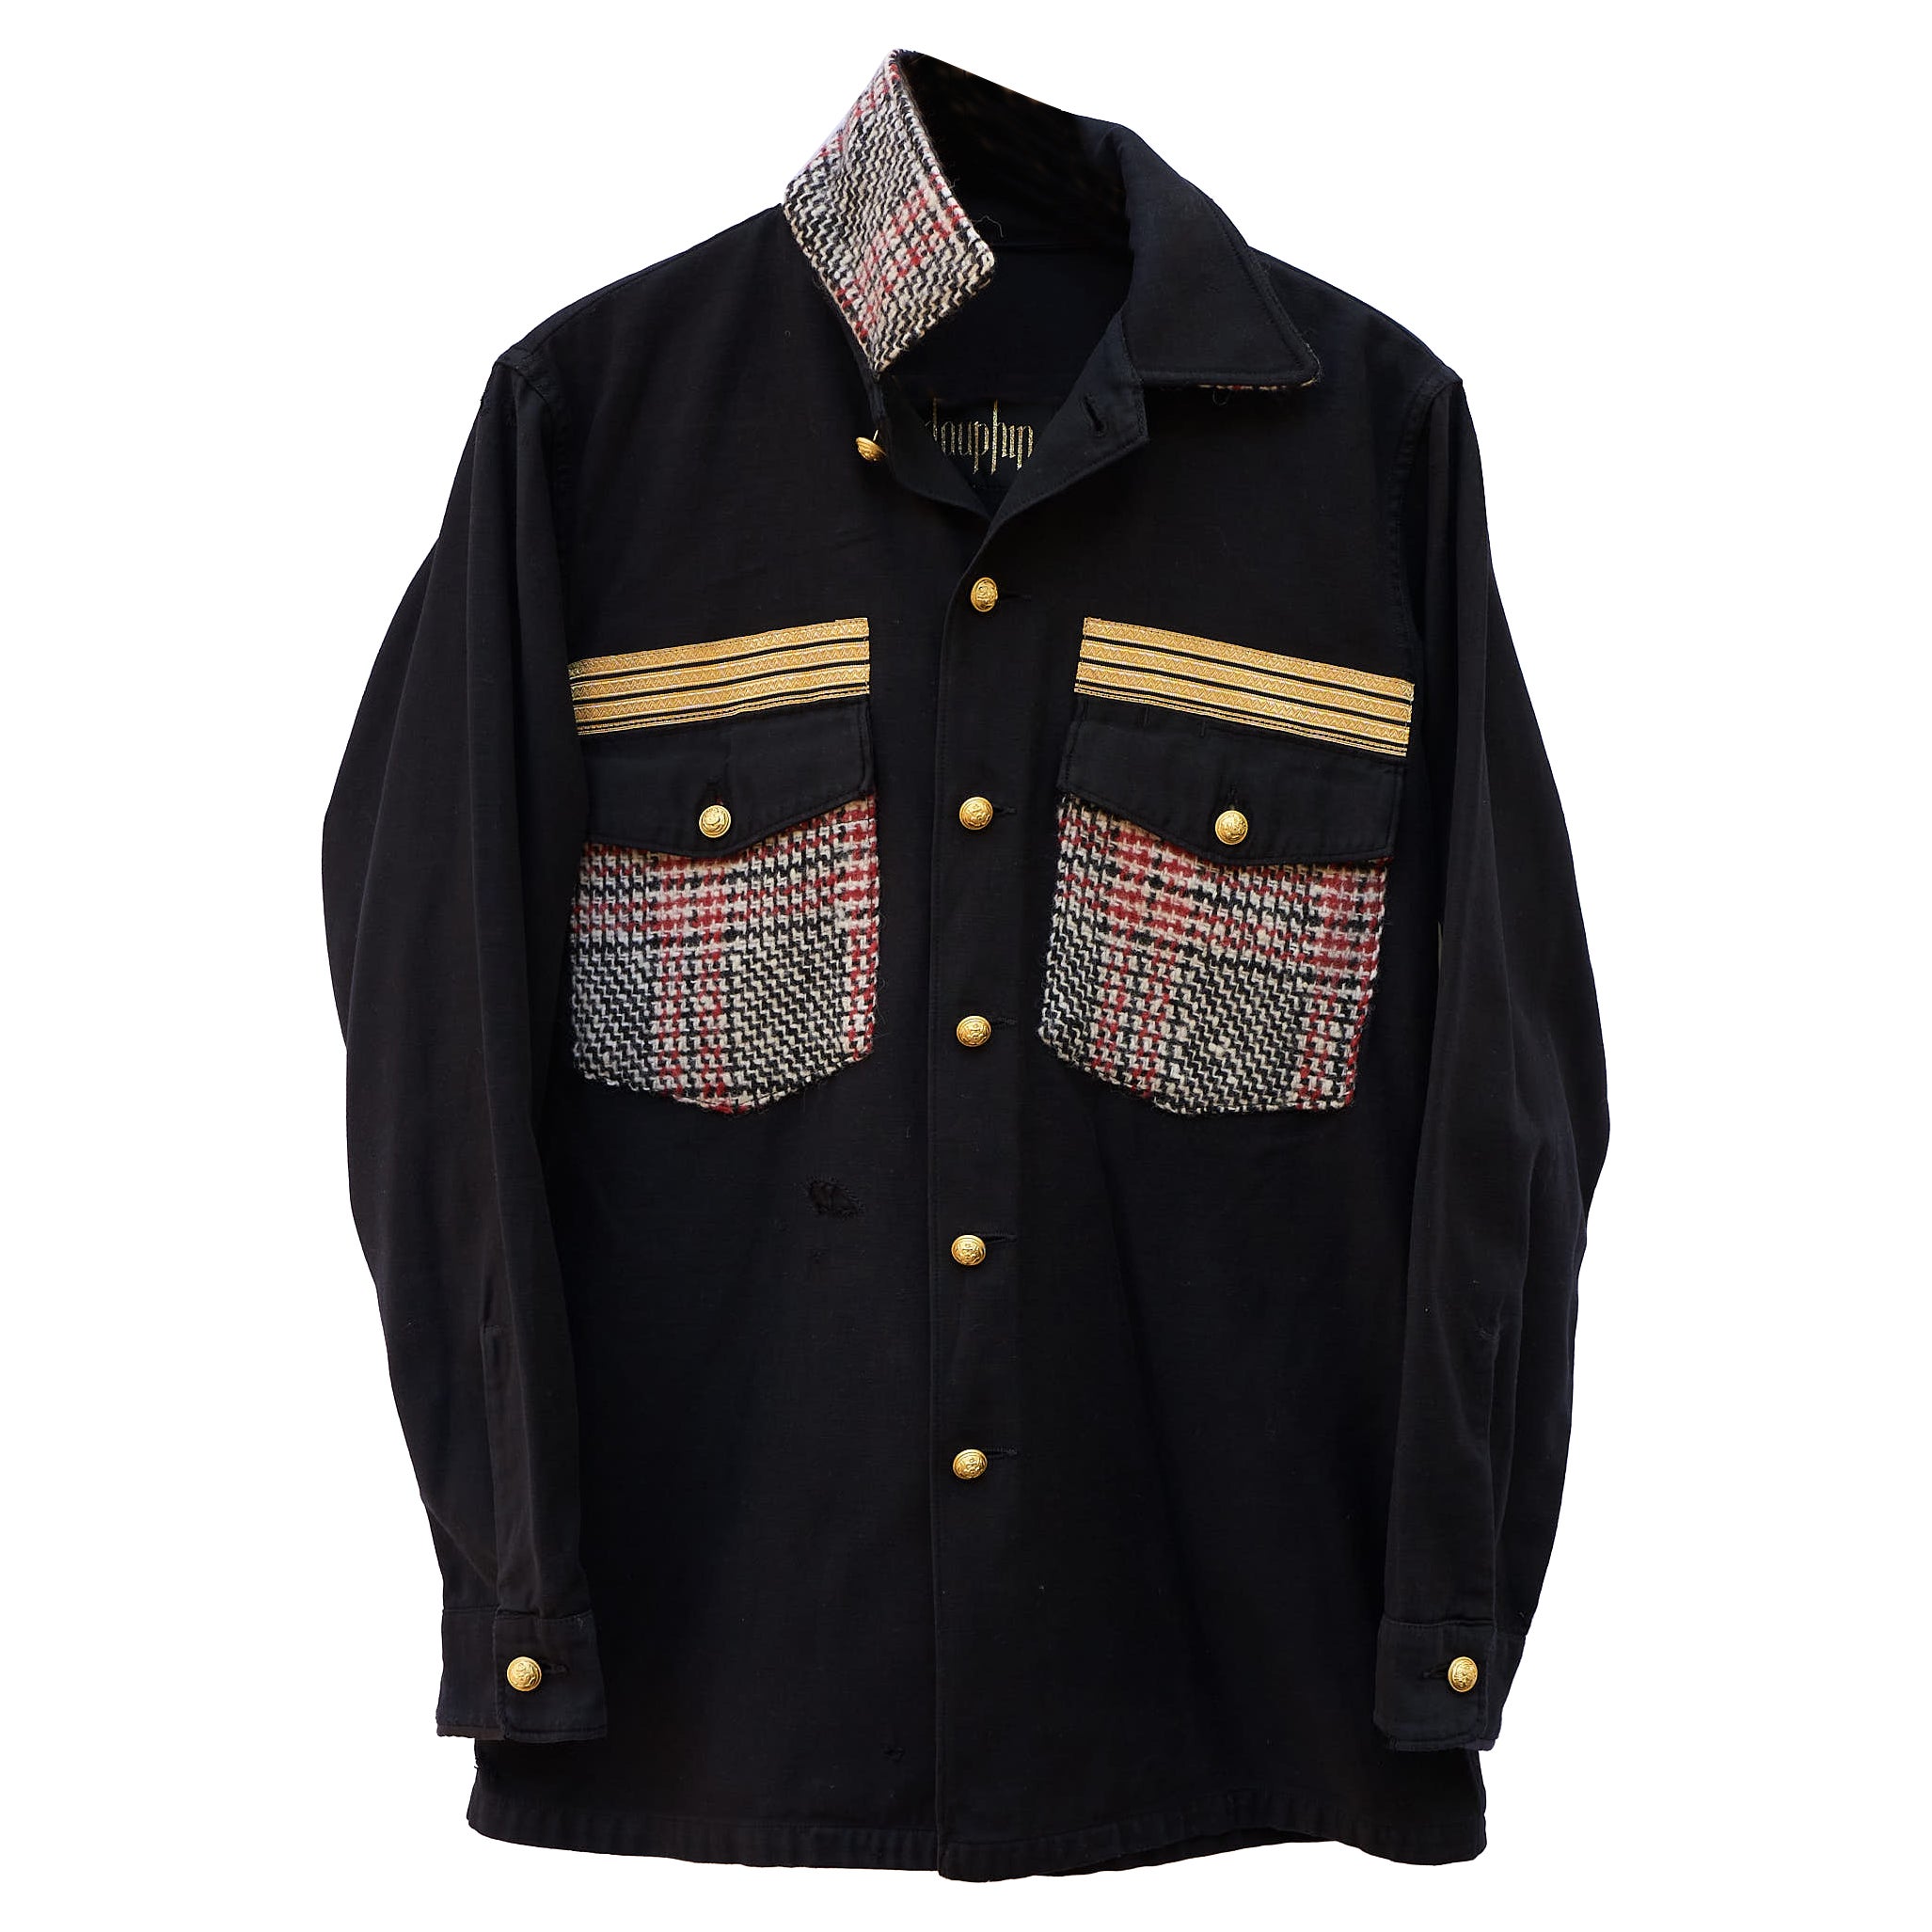 Designer Jacket Black Military Red White Black Tartan Wool Gold Braid J Dauphin